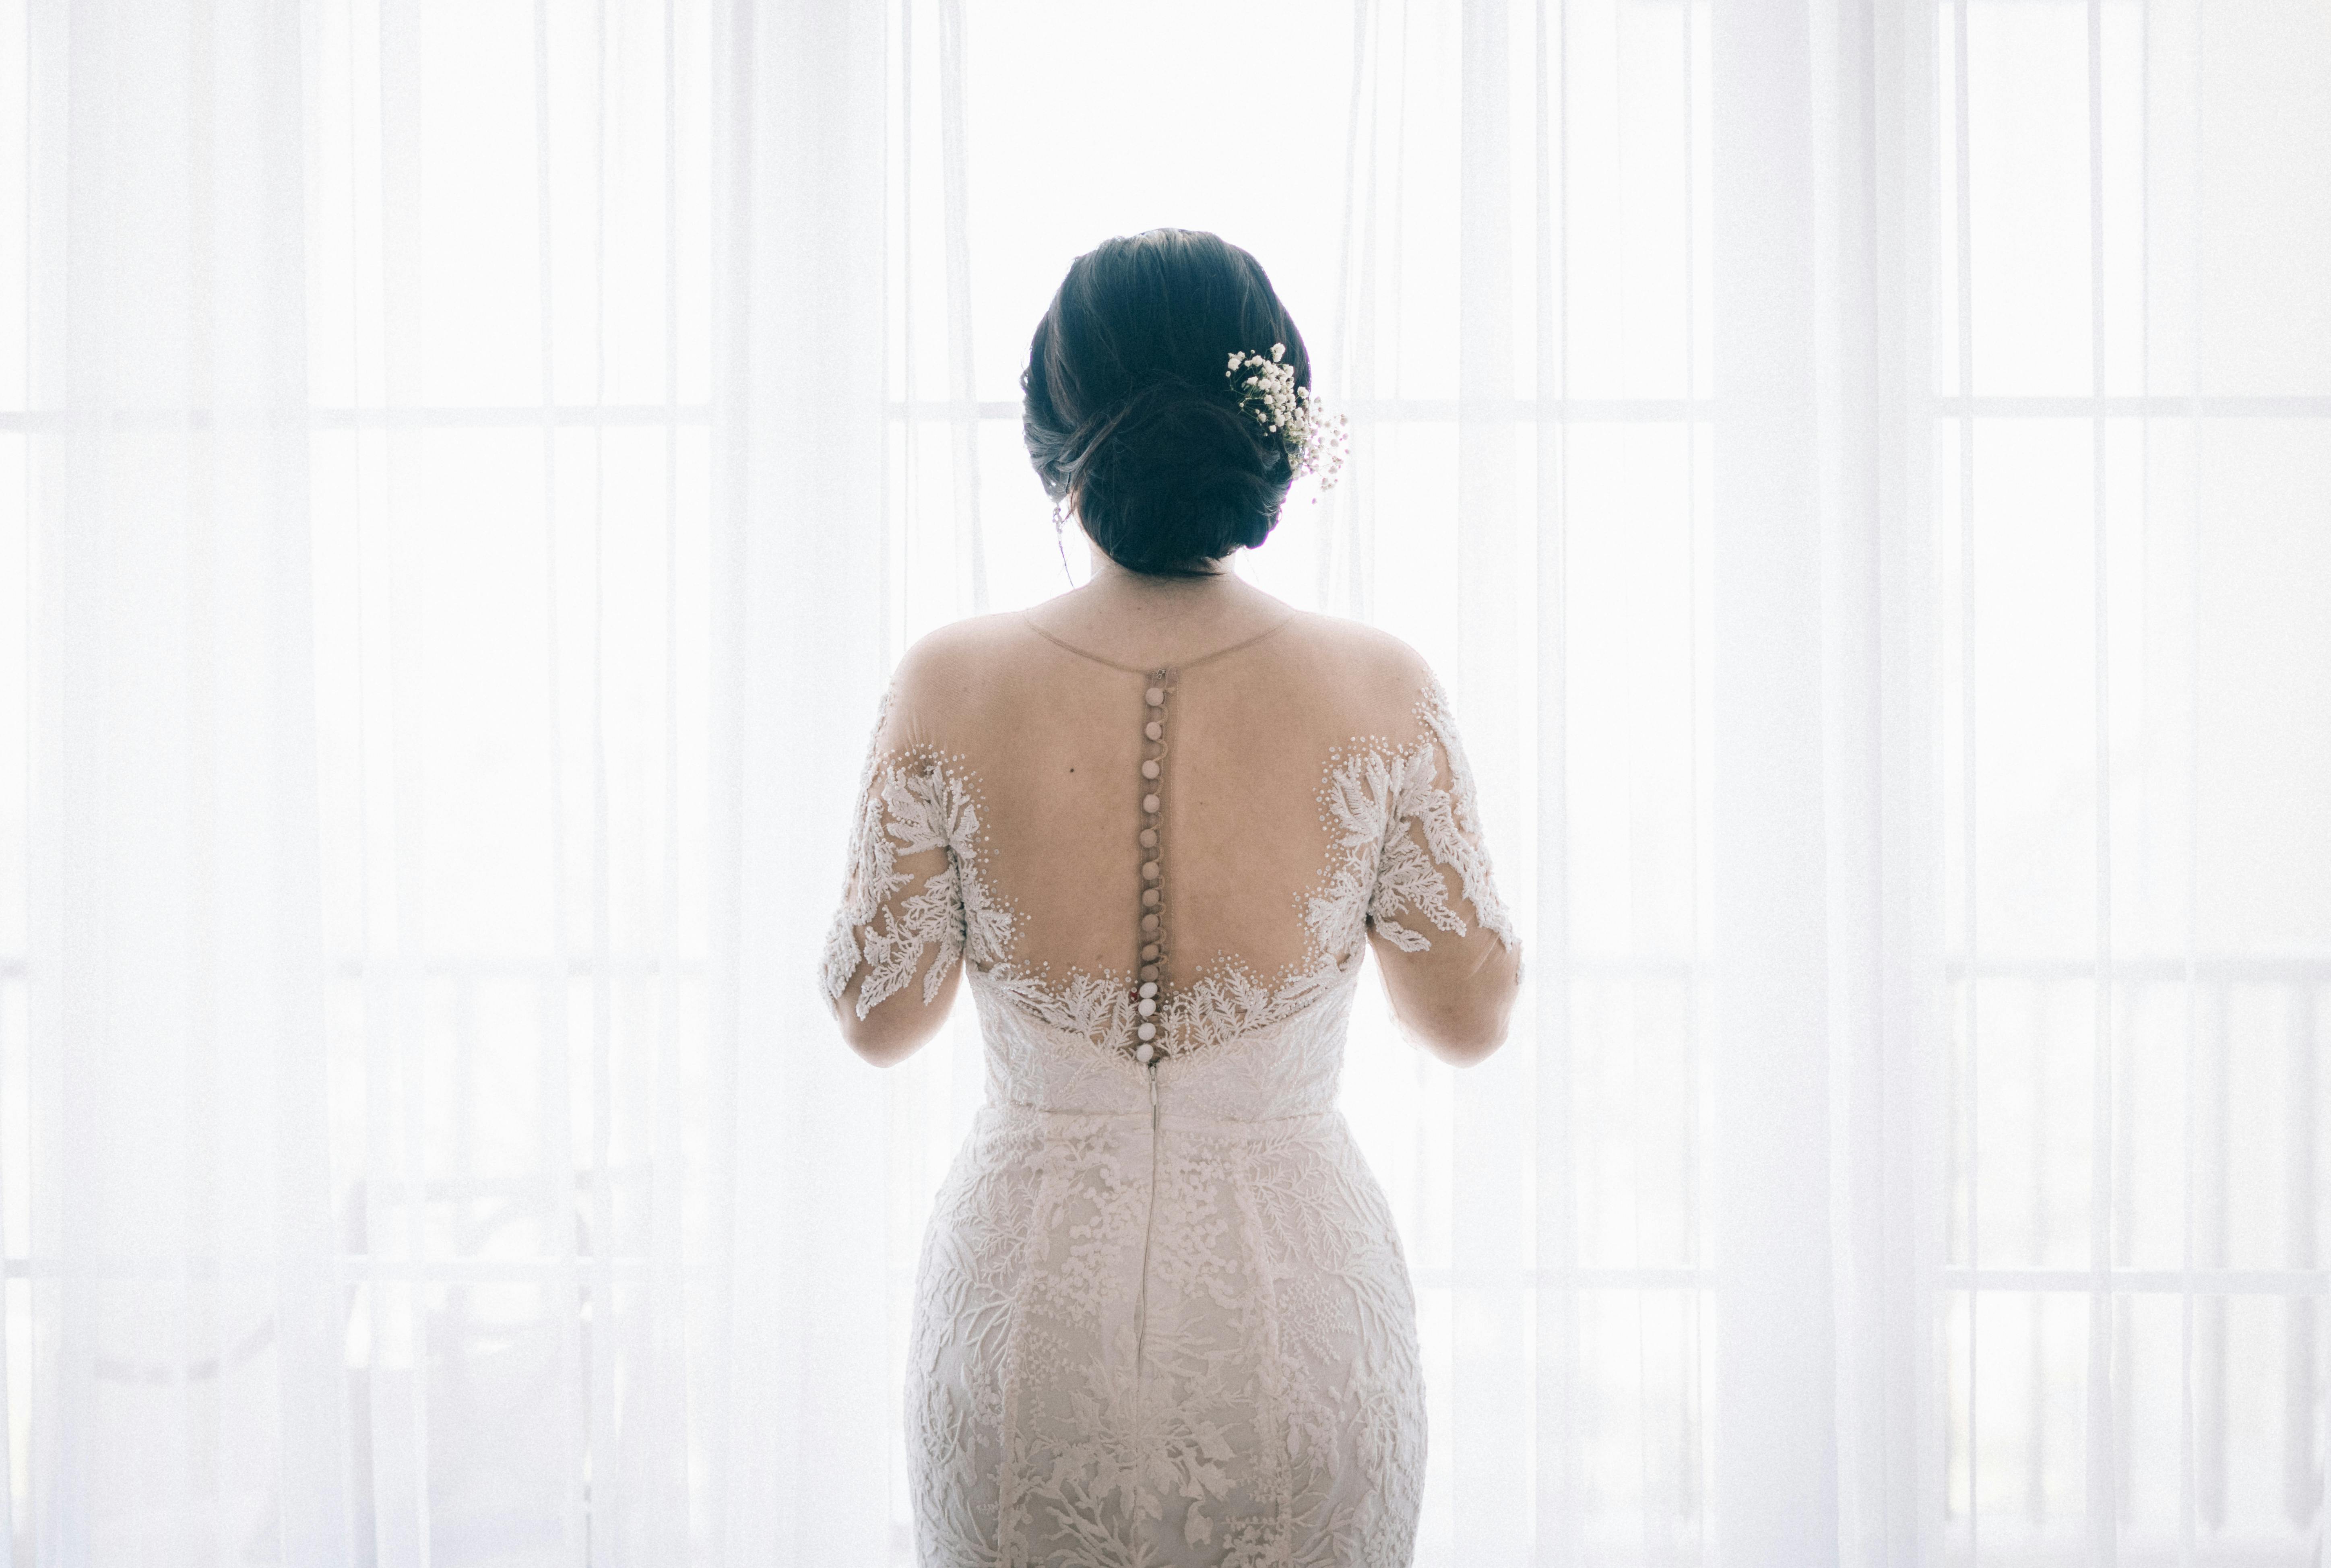 Woman Wearing White Lace Wedding Dress Near White Curtain \u00b7 Free Stock Photo